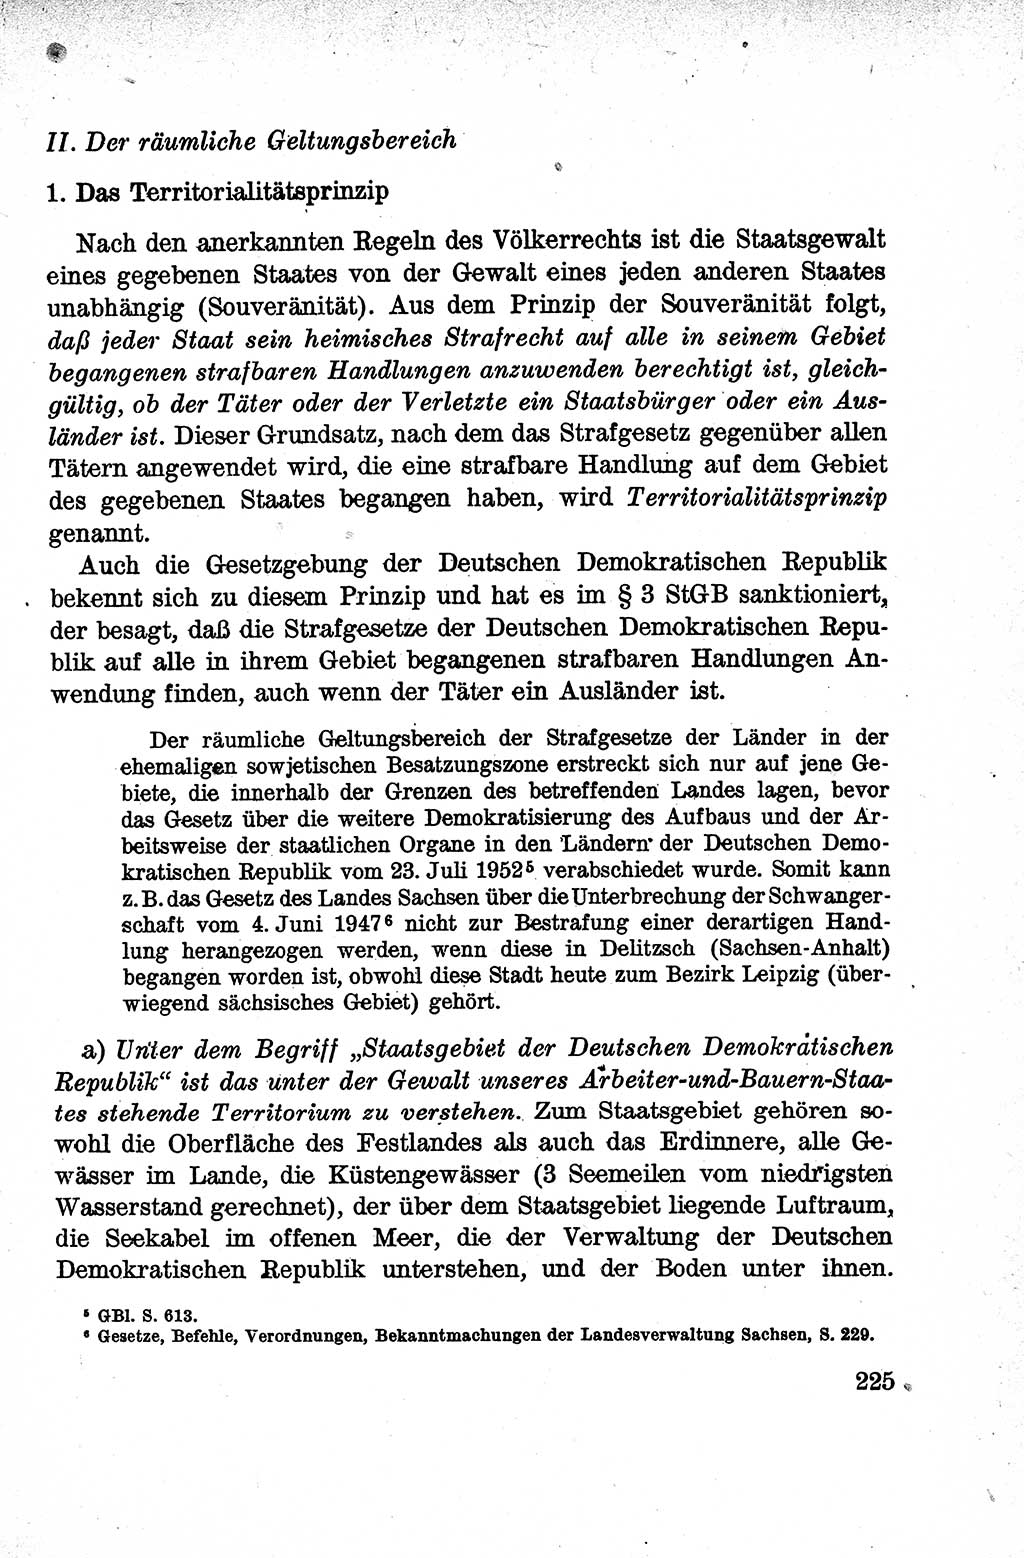 Lehrbuch des Strafrechts der Deutschen Demokratischen Republik (DDR), Allgemeiner Teil 1959, Seite 225 (Lb. Strafr. DDR AT 1959, S. 225)